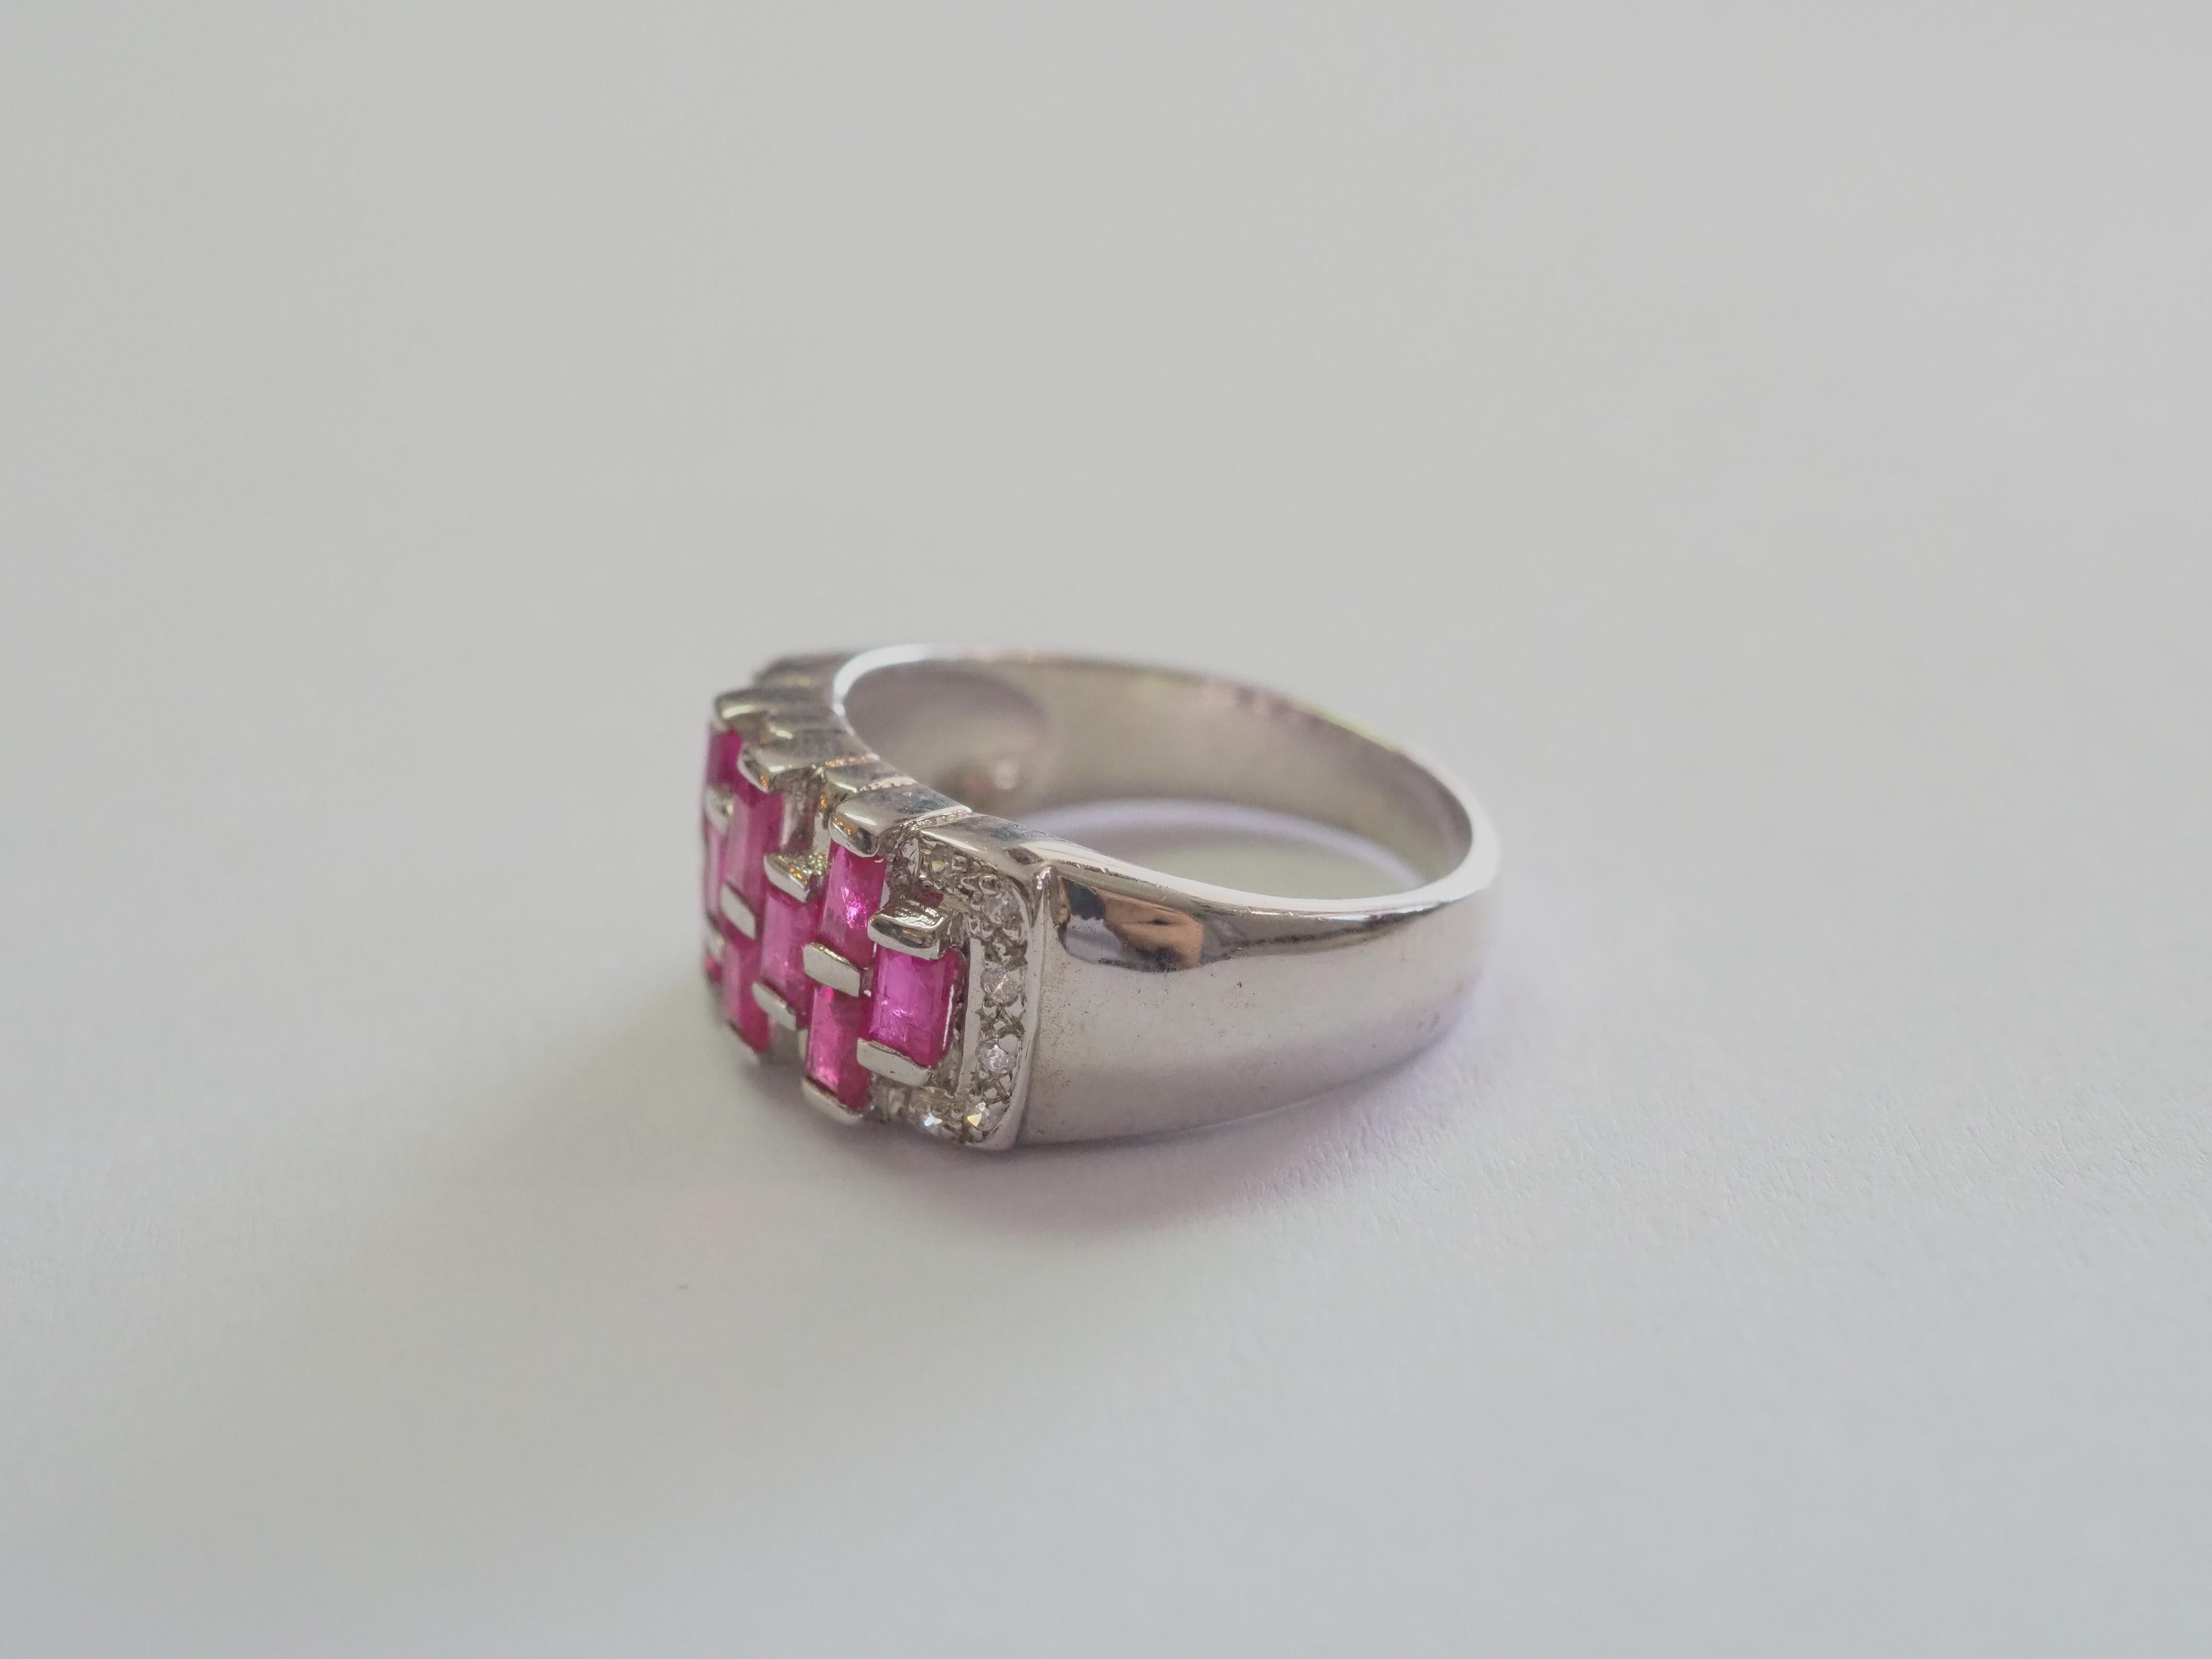 Dieser Ring ist ein schöner Bandring aus massivem Sterlingsilber. Der Ring ist mit einem natürlichen, rosaroten Baguette-Rubin verziert, der auf der Vorderseite des Rings wunderschön gefasst ist. Die weißen Steine sind Cubic Zirconia. Der Rubin ist